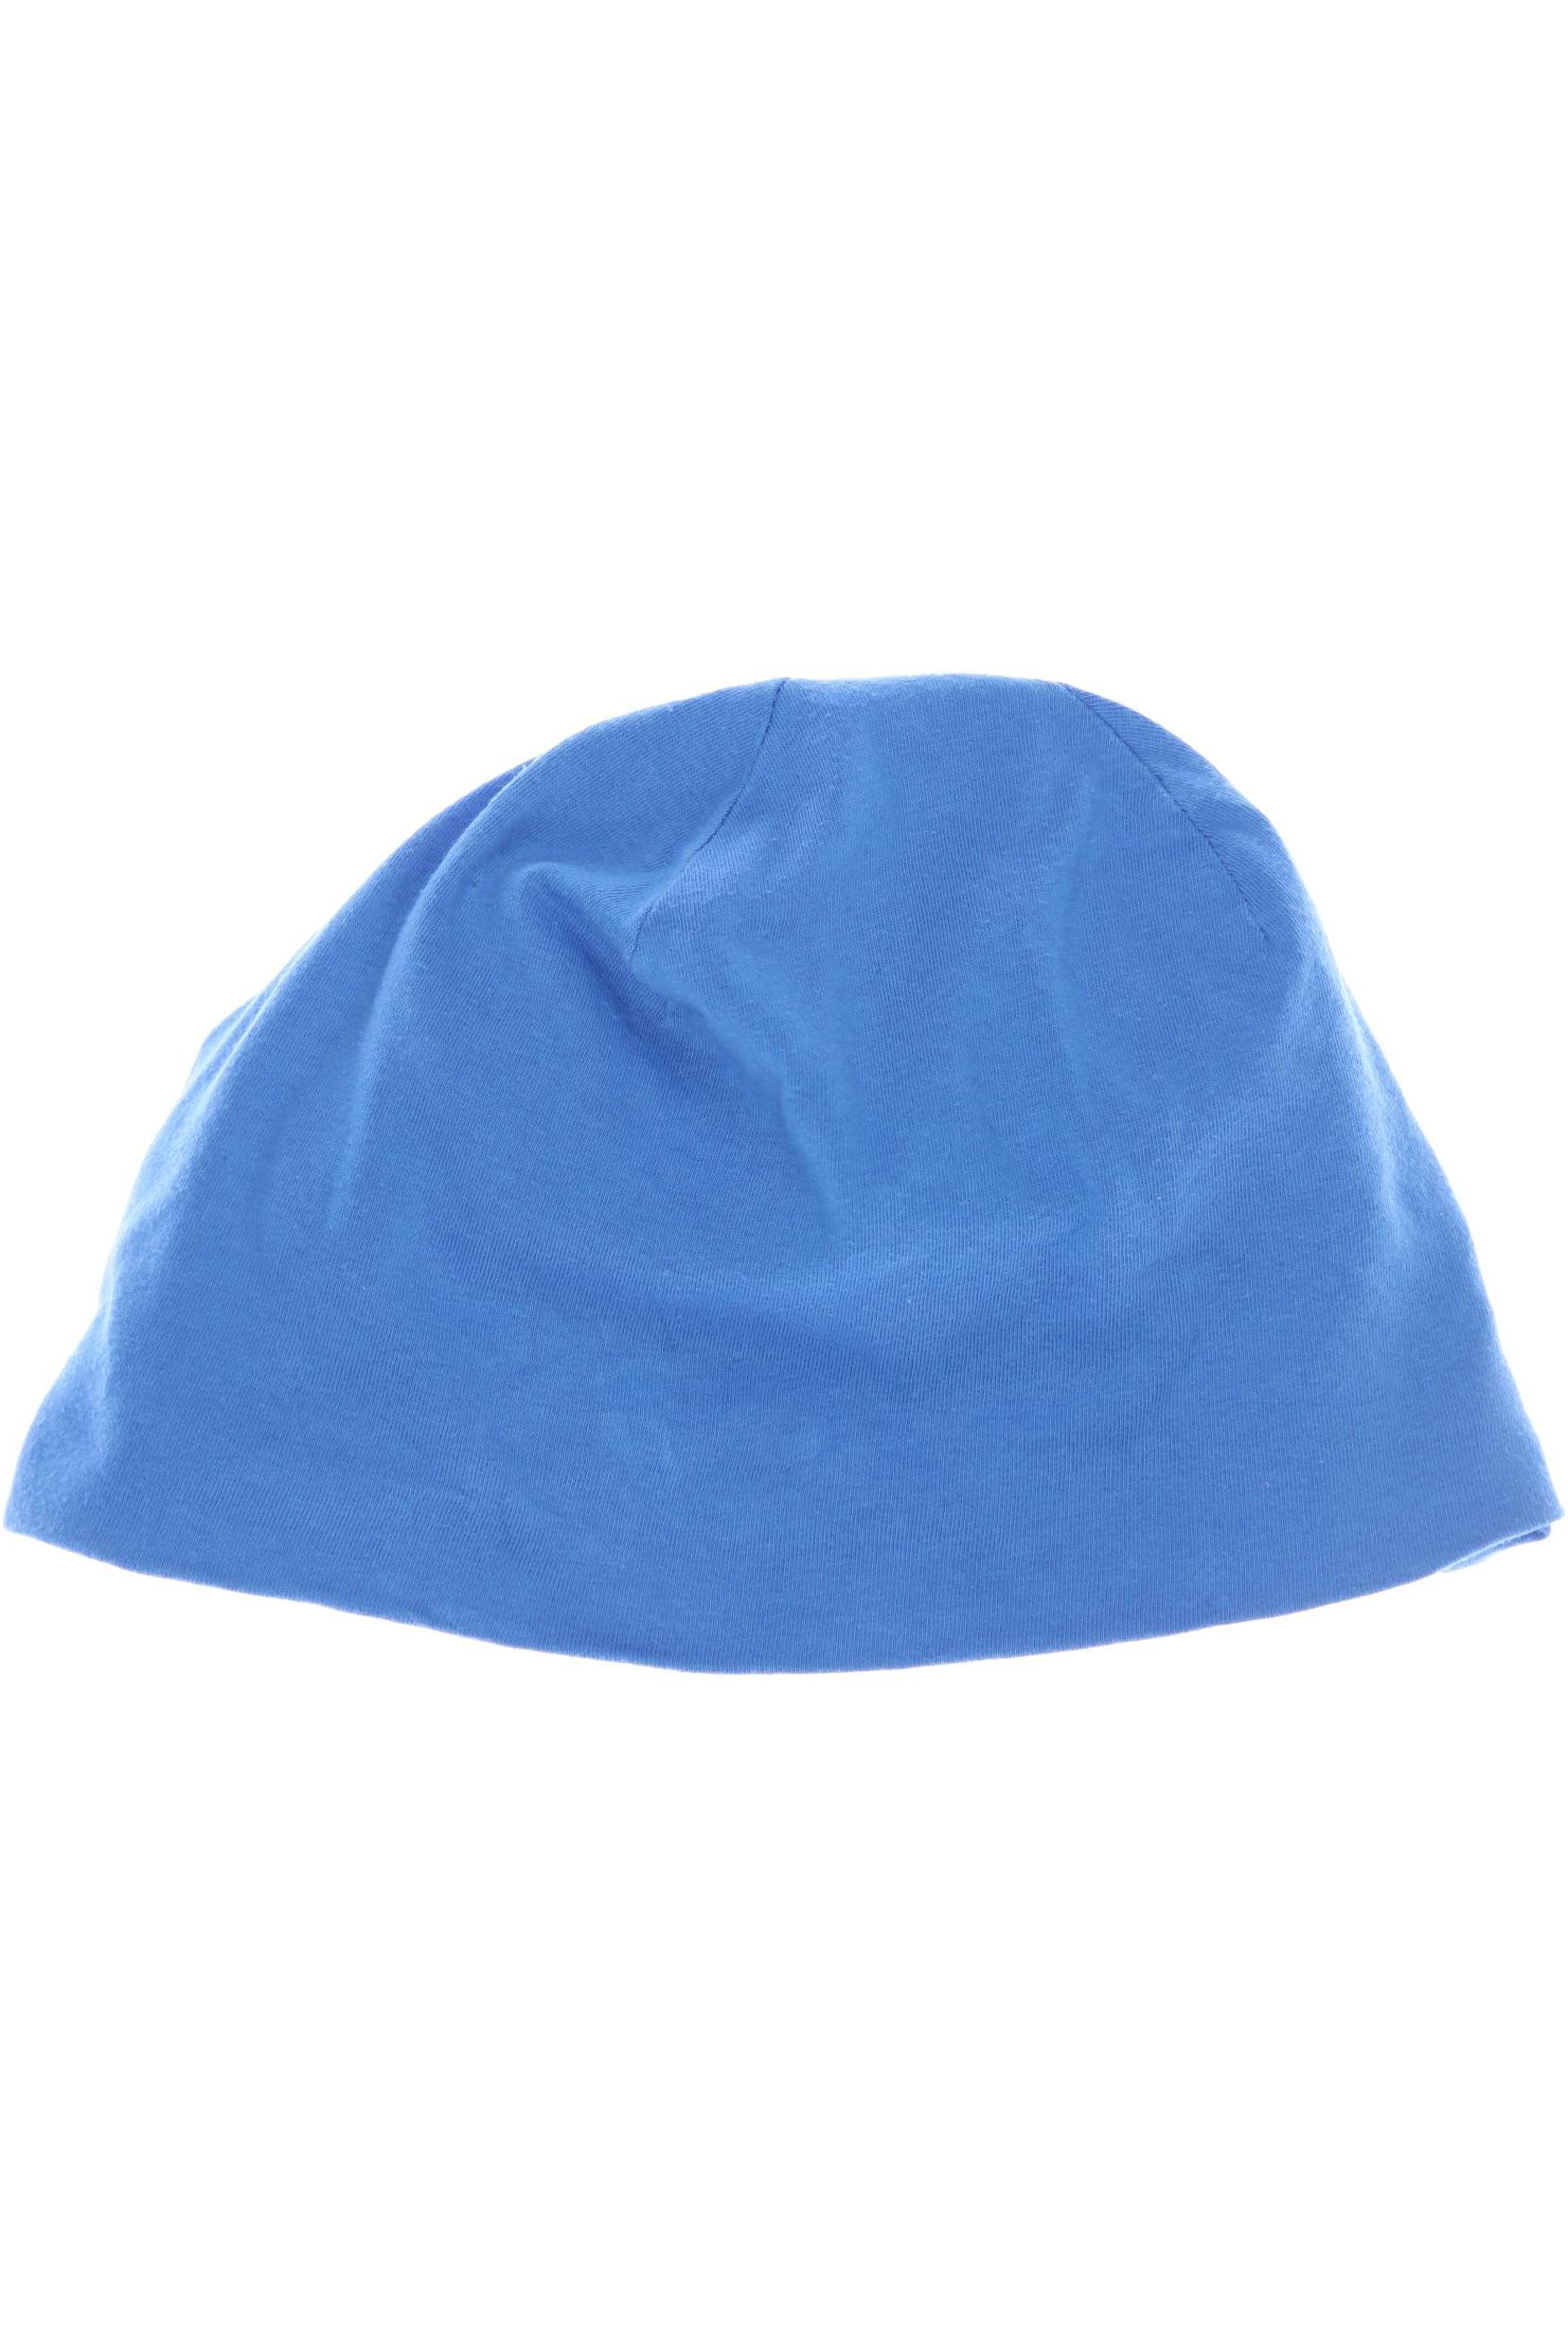 Esprit Jungen Hut/Mütze, blau von Esprit